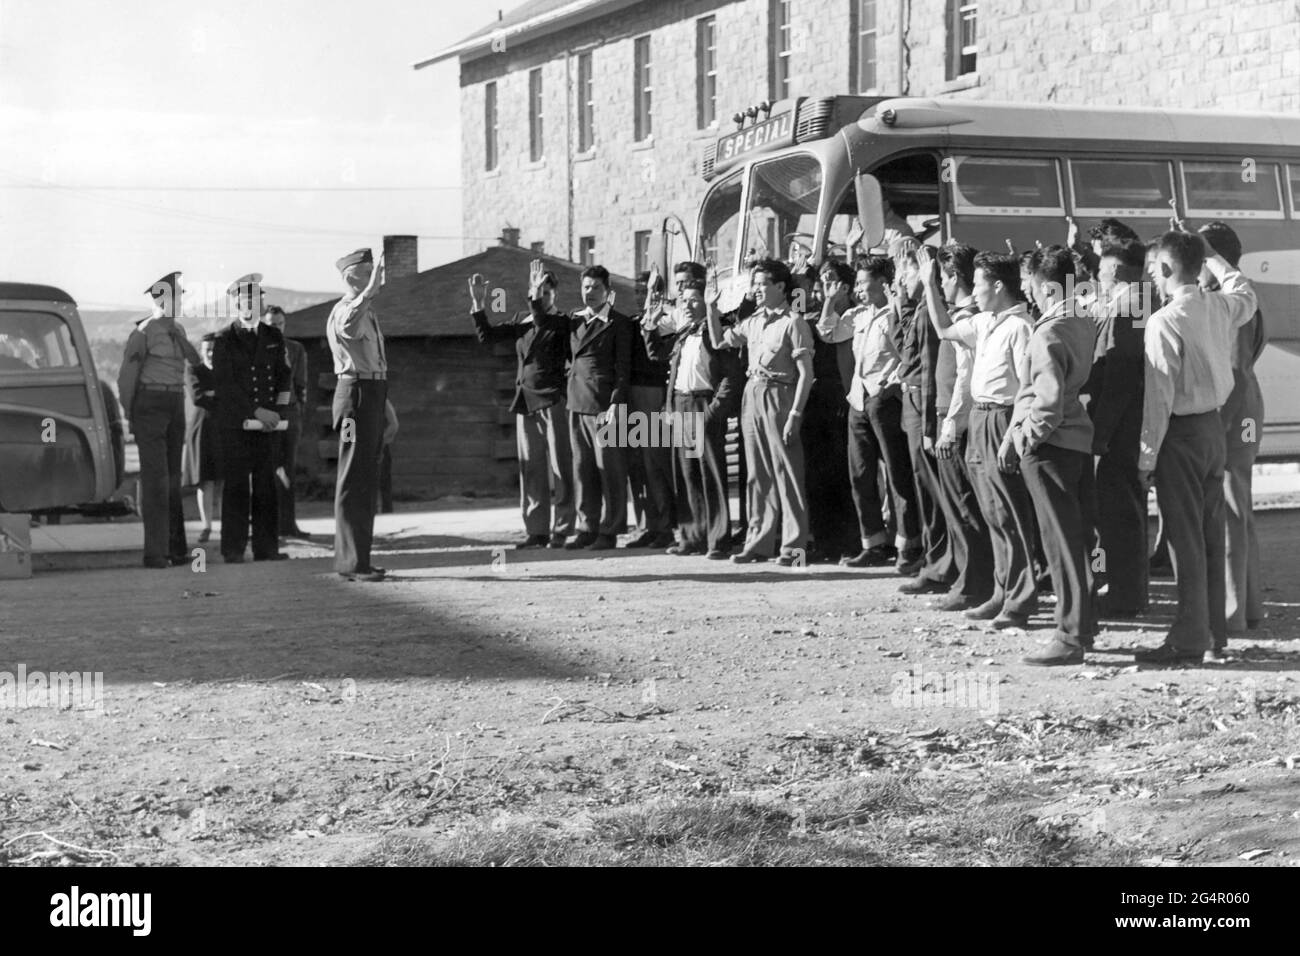 Les 29 premiers soldats Navajo à servir de tikers de code pendant la Seconde Guerre mondiale étant assermentés dans le corps des Marines des États-Unis à fort Wingate, Nouveau-Mexique, le 4 mai 1942. Banque D'Images